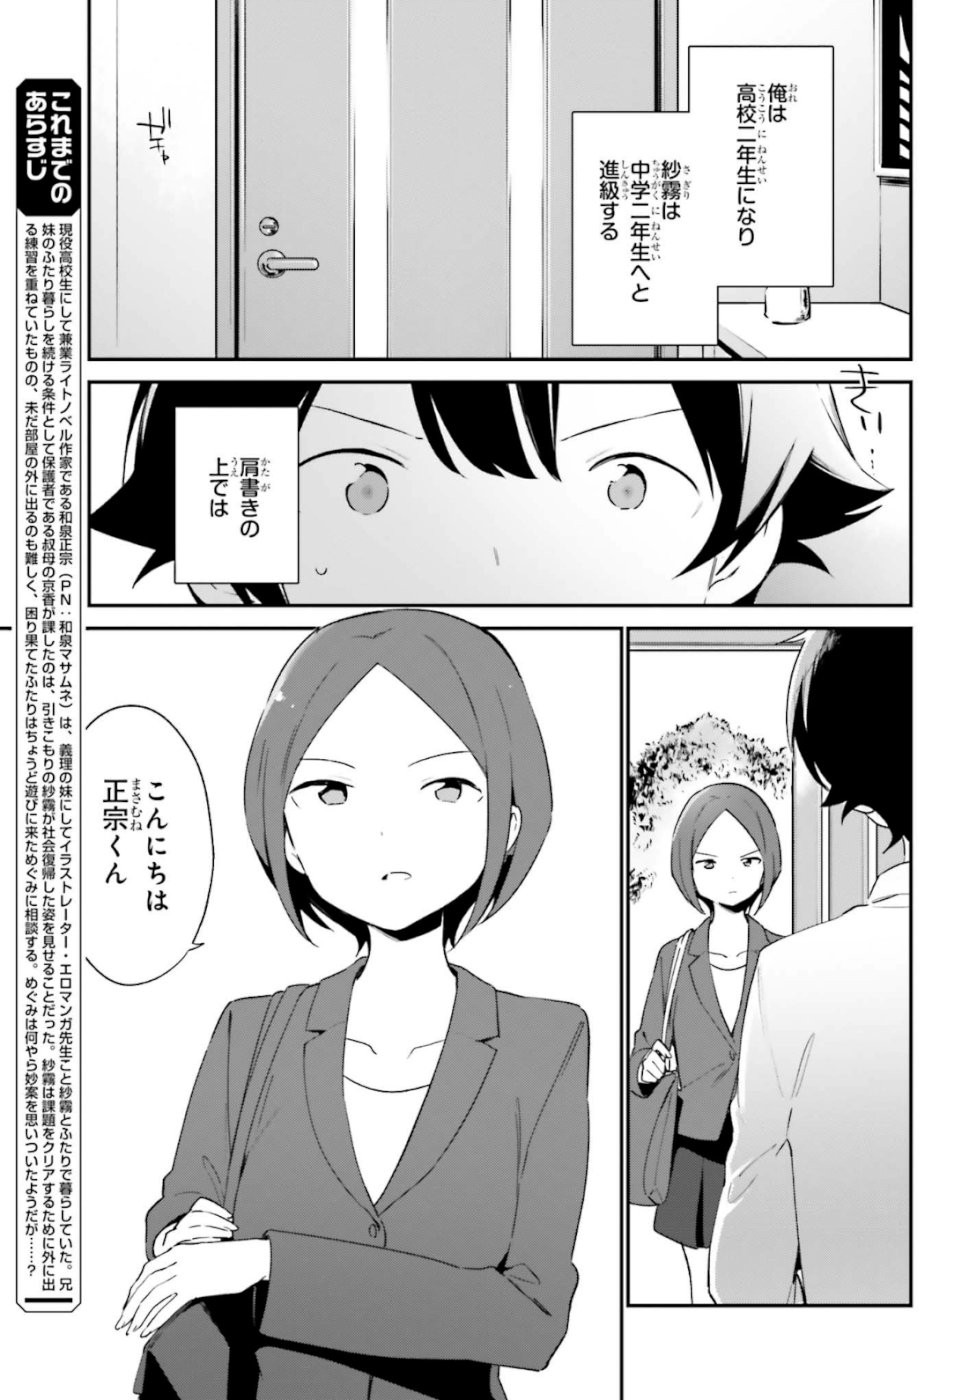 Ero Manga Sensei - Chapter 63 - Page 3